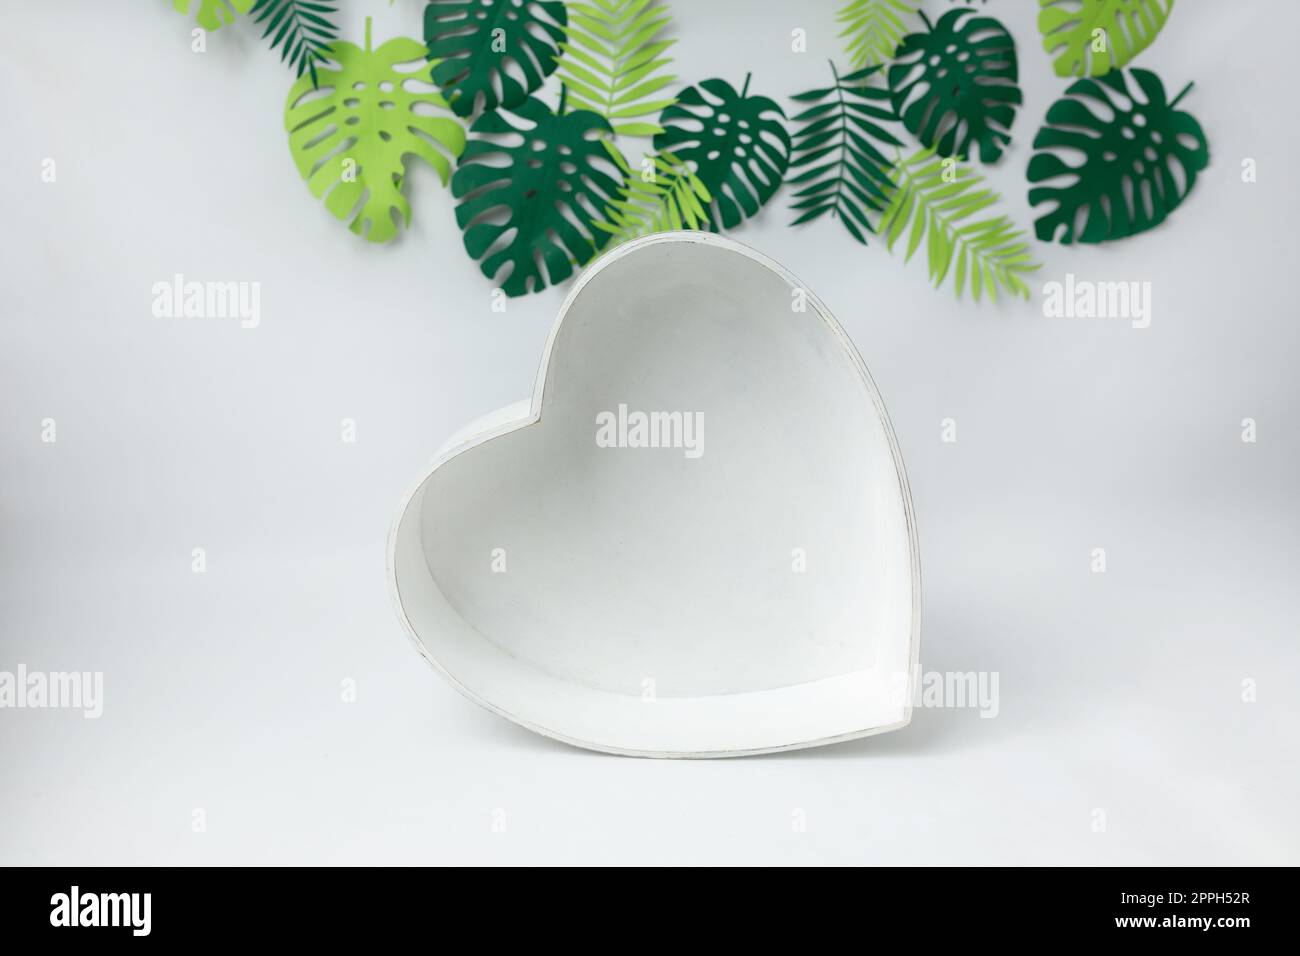 cuore in legno su fondo bianco con foglie verdi. cestino per fotografia neonato. foglie. cuore Foto Stock